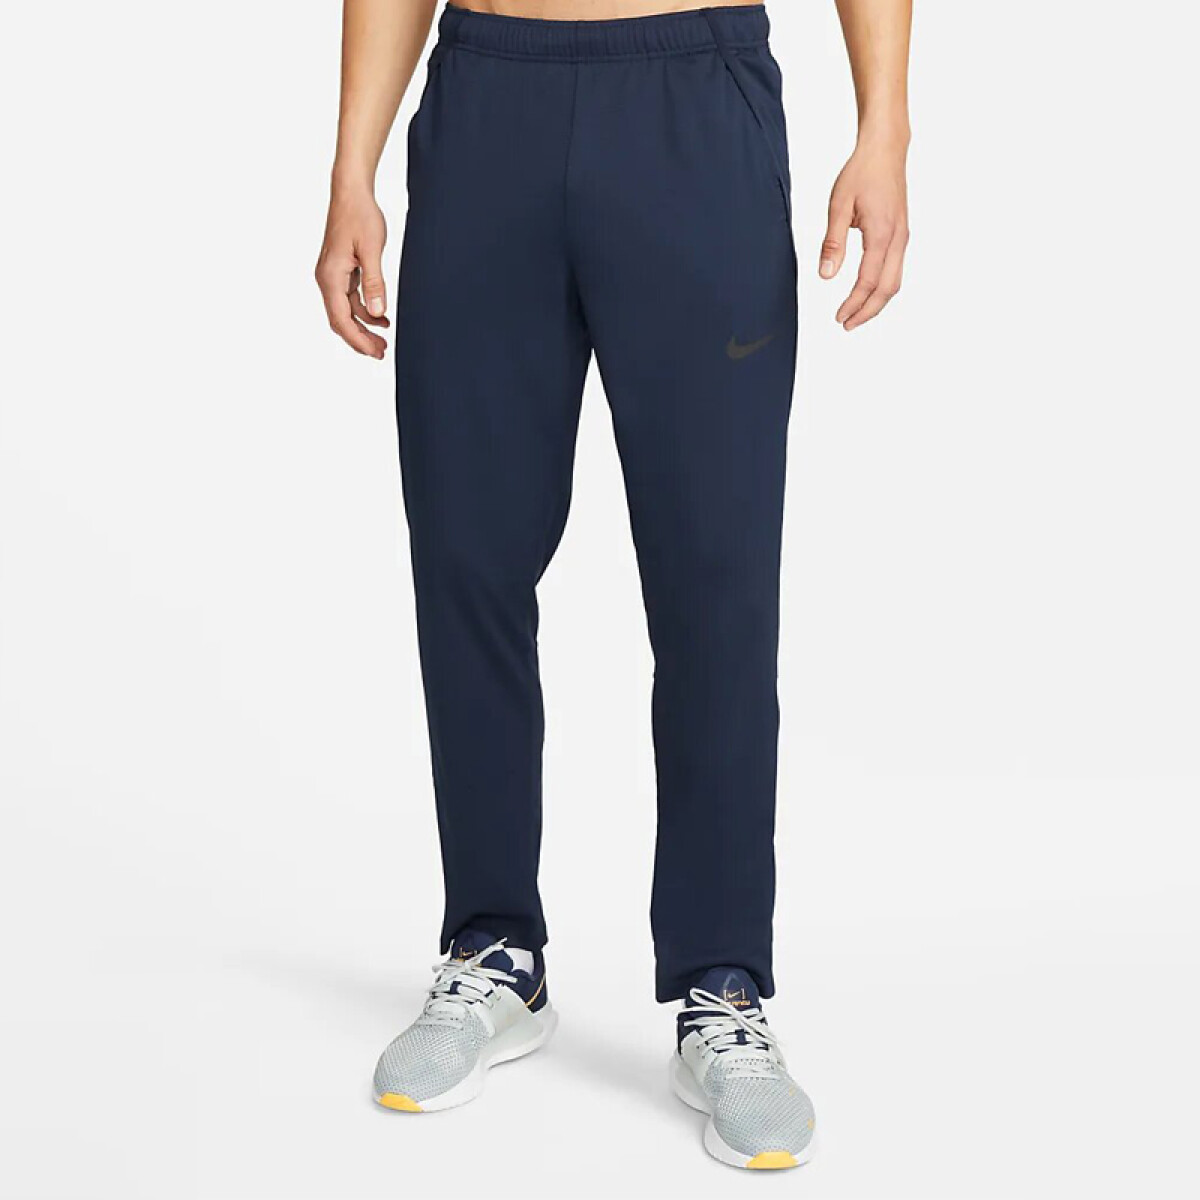 Pantalon Nike Dri-fit Epic 